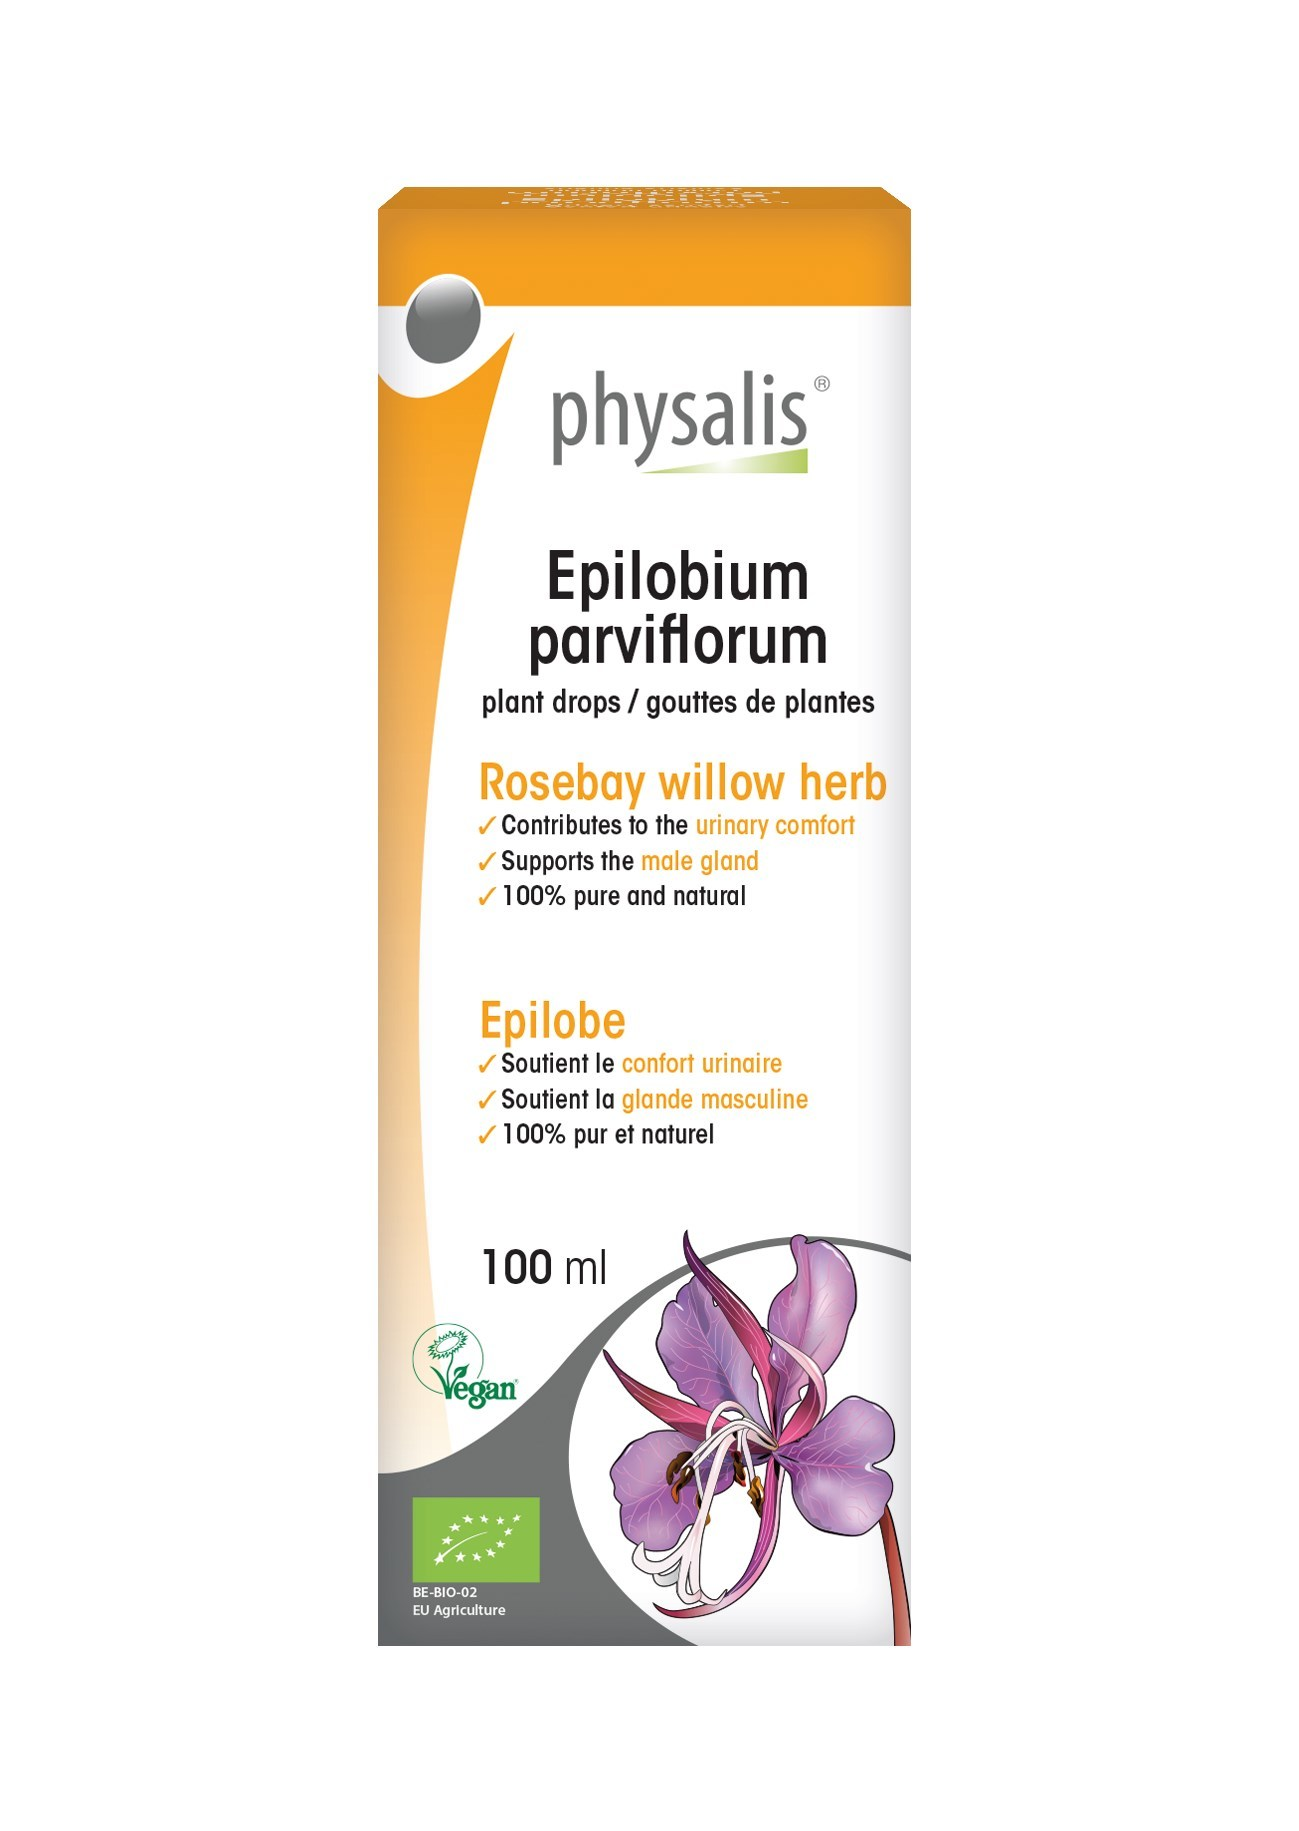 Epilobium parviflorum, 100ml